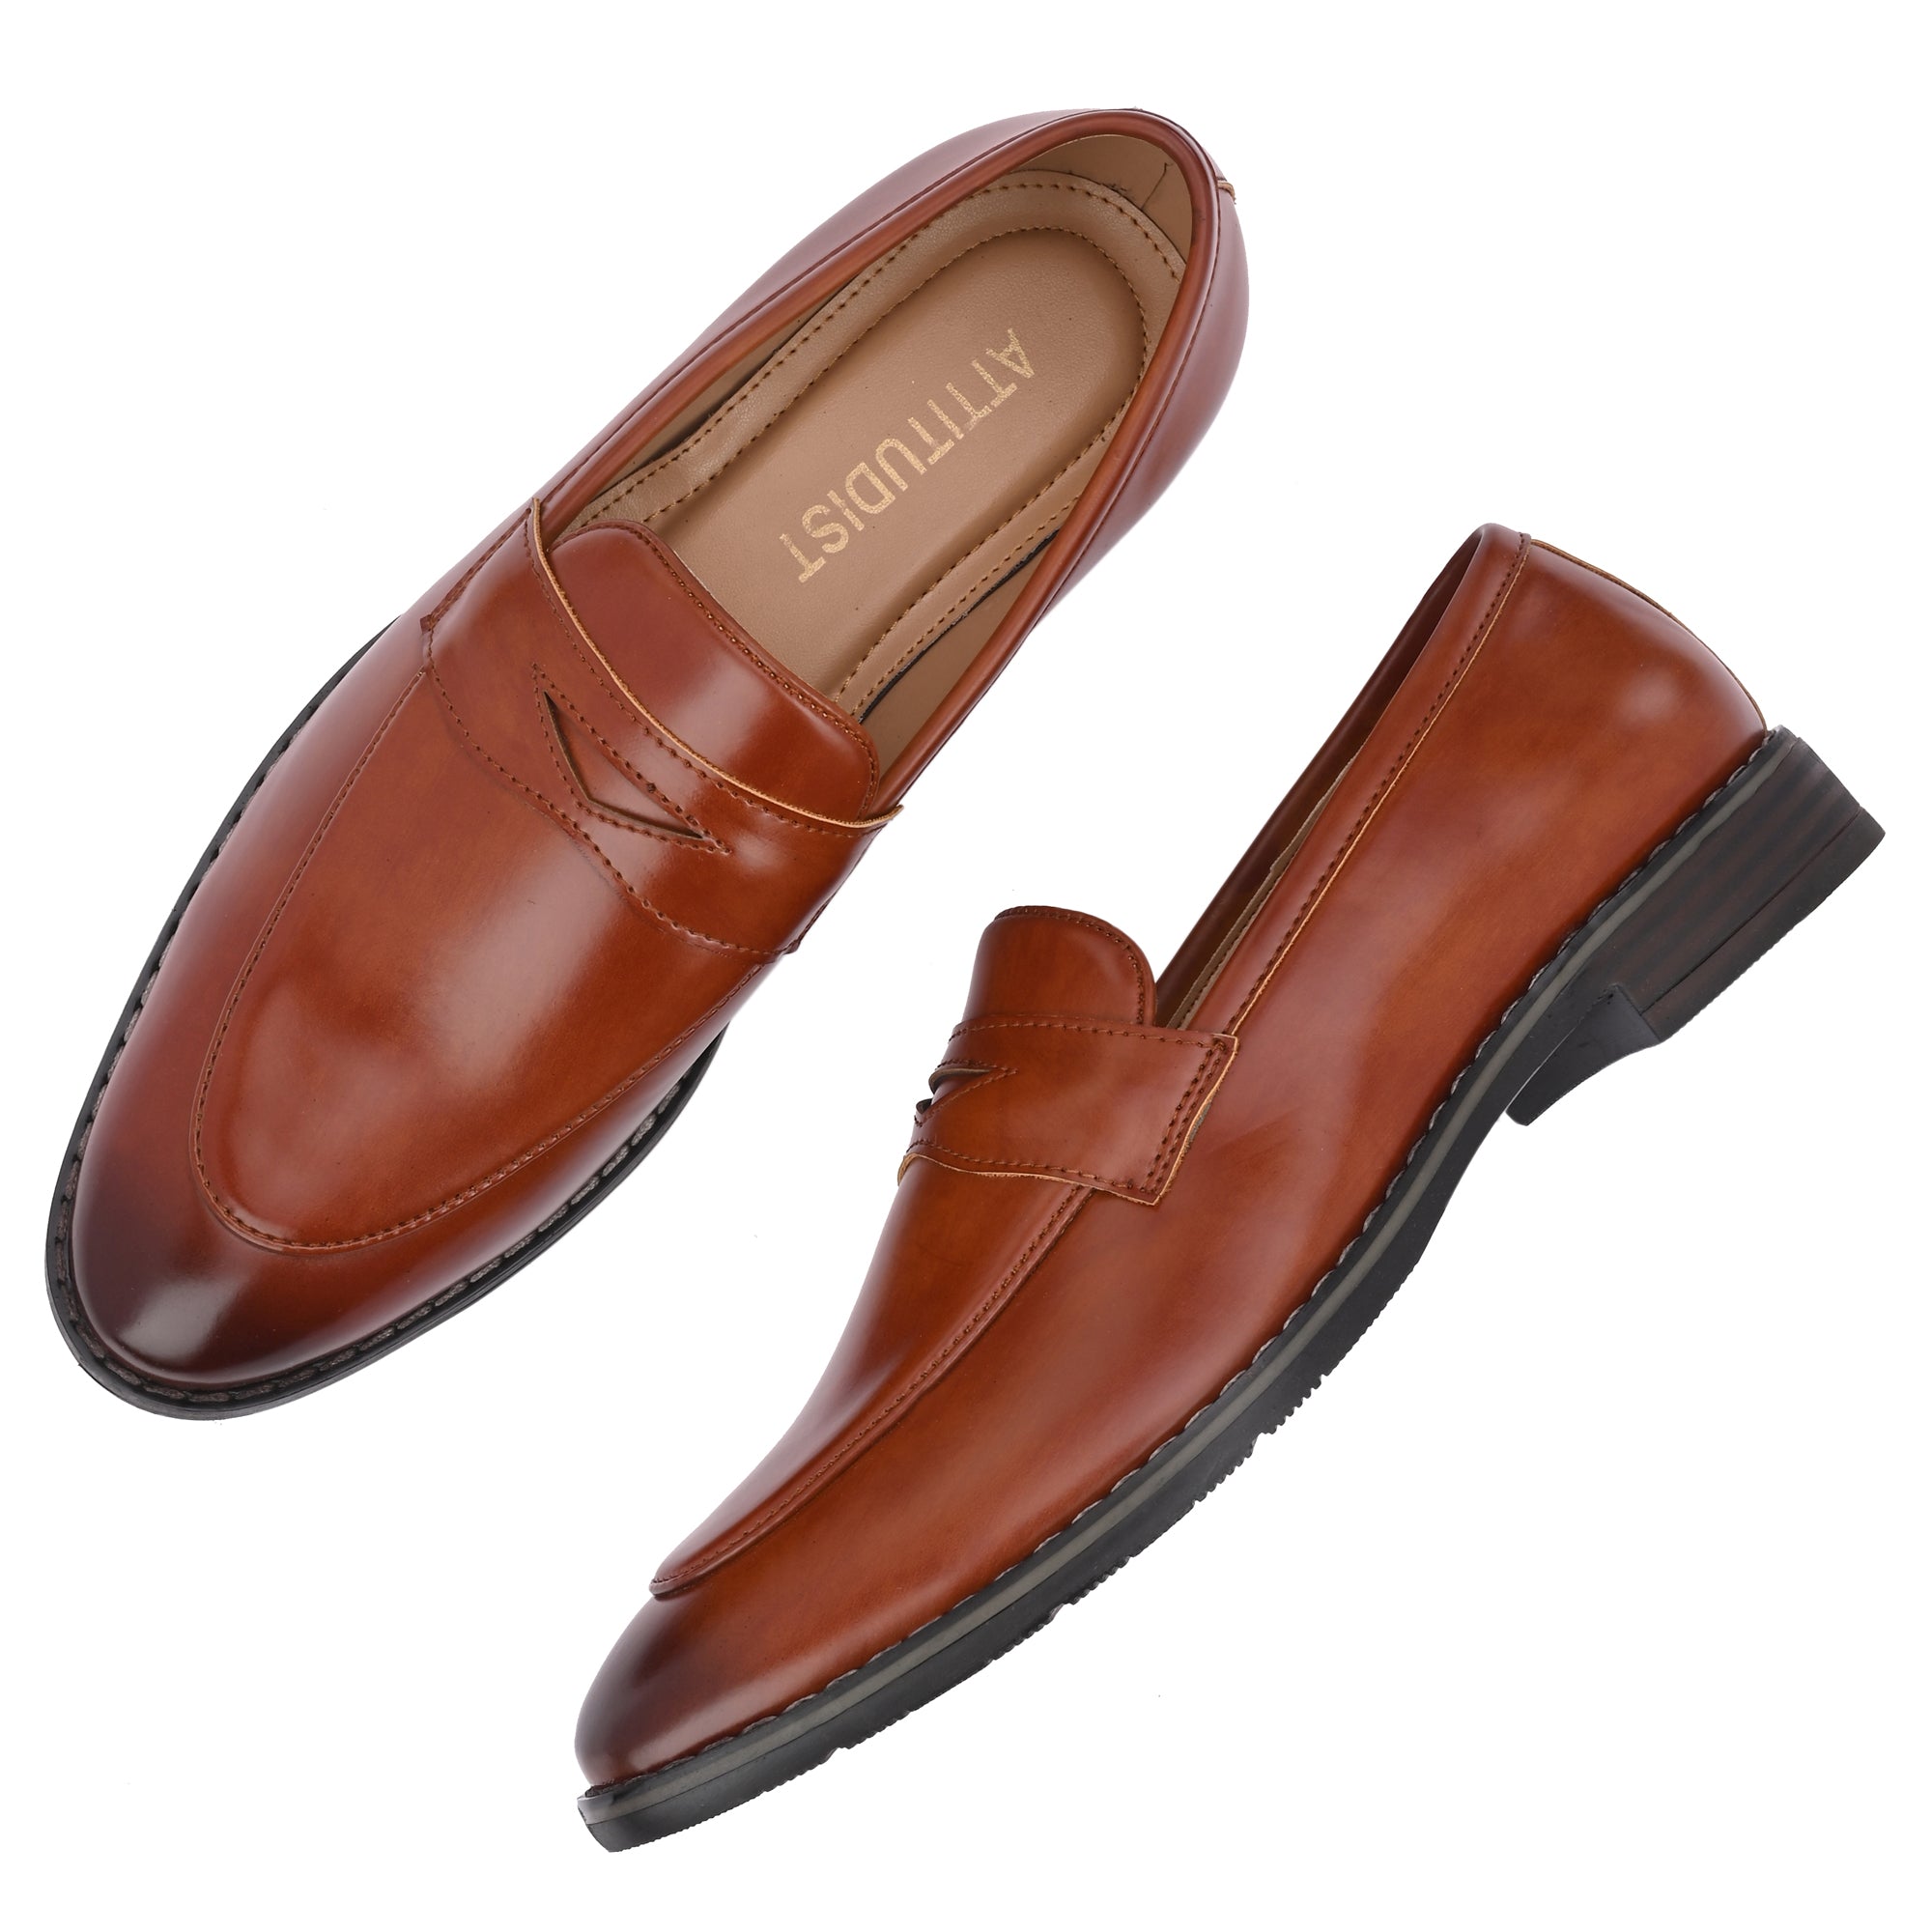 tan-loafers-attitudist-shoes-for-men-sp8c